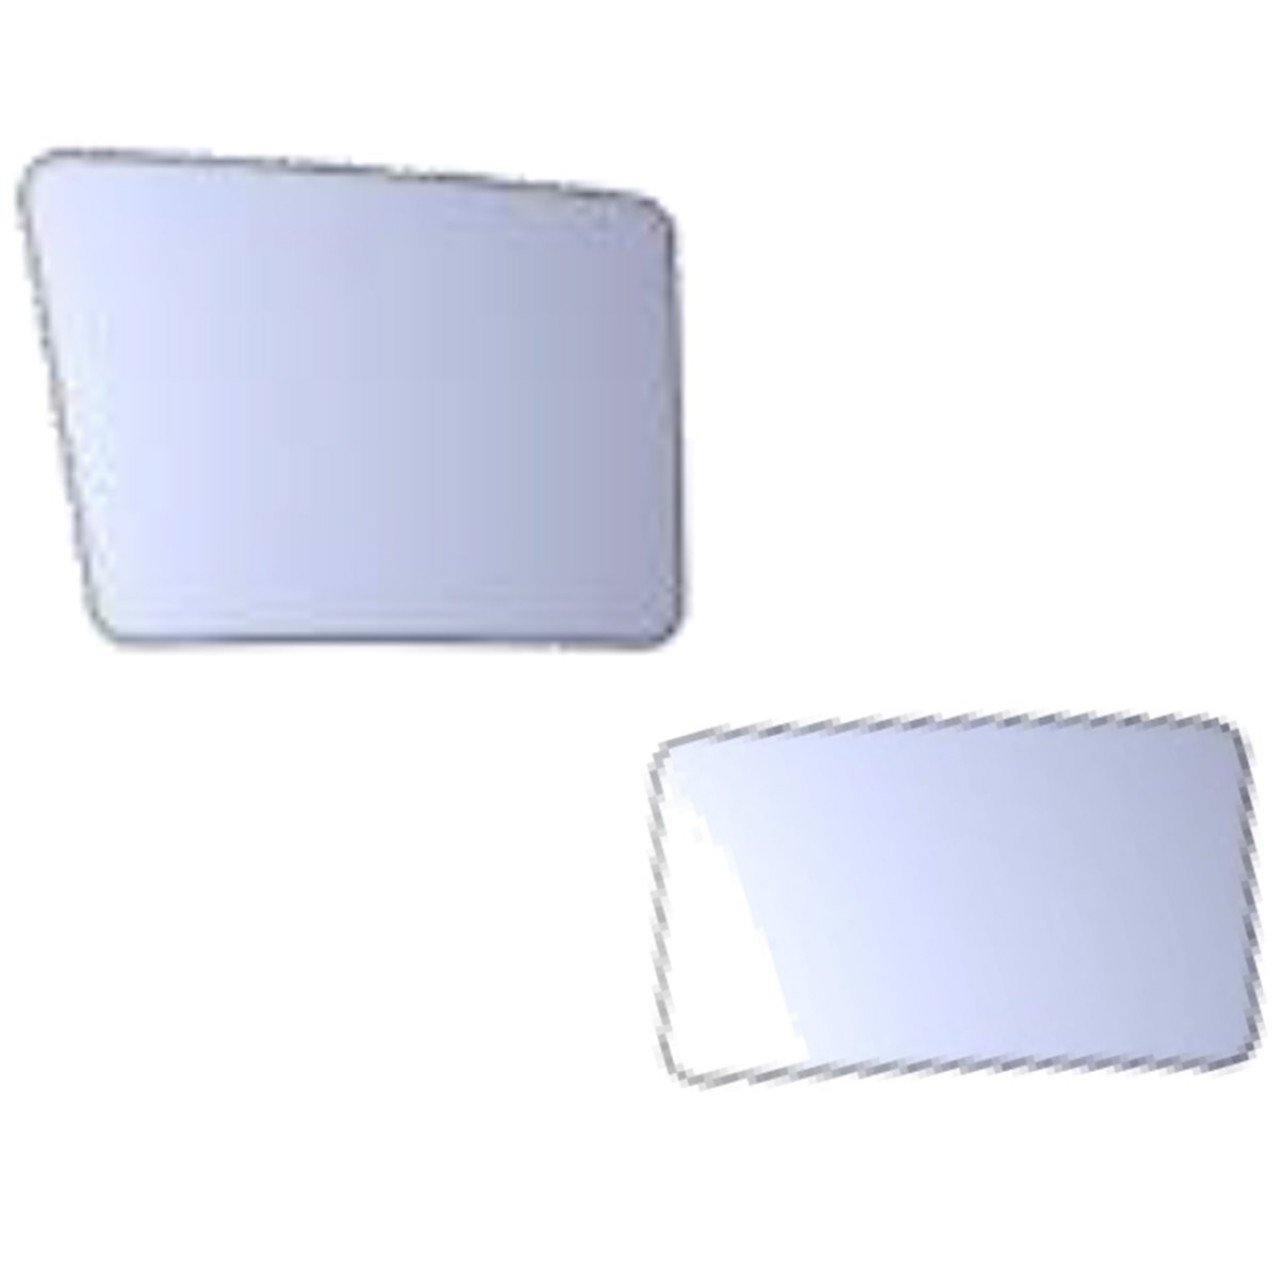 403 Tepe Ayna Camı Küçük r320 160x85 mm